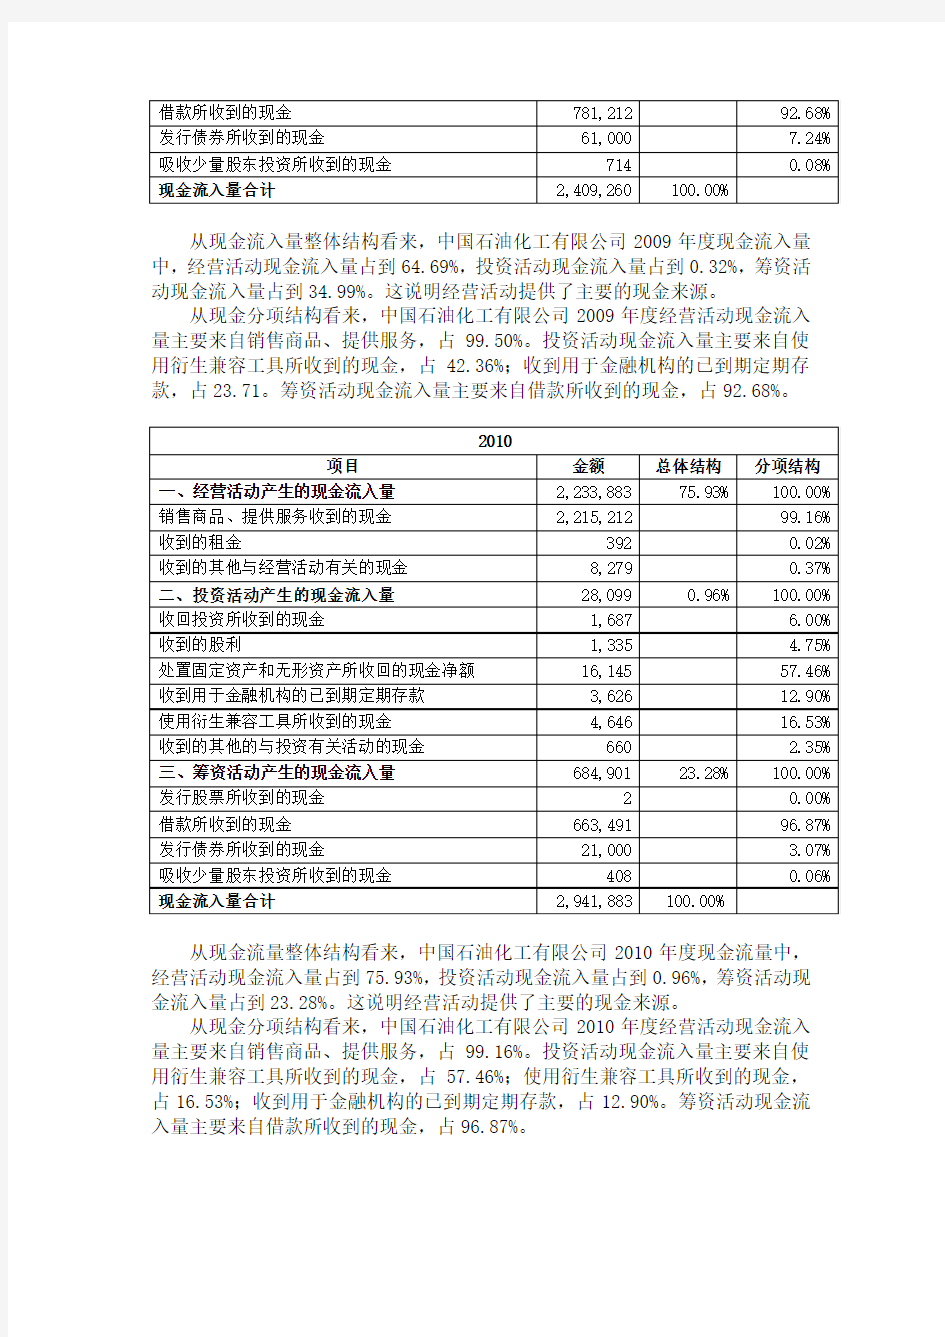 中国石油化工有限公司2009年至2011年现金流量分析